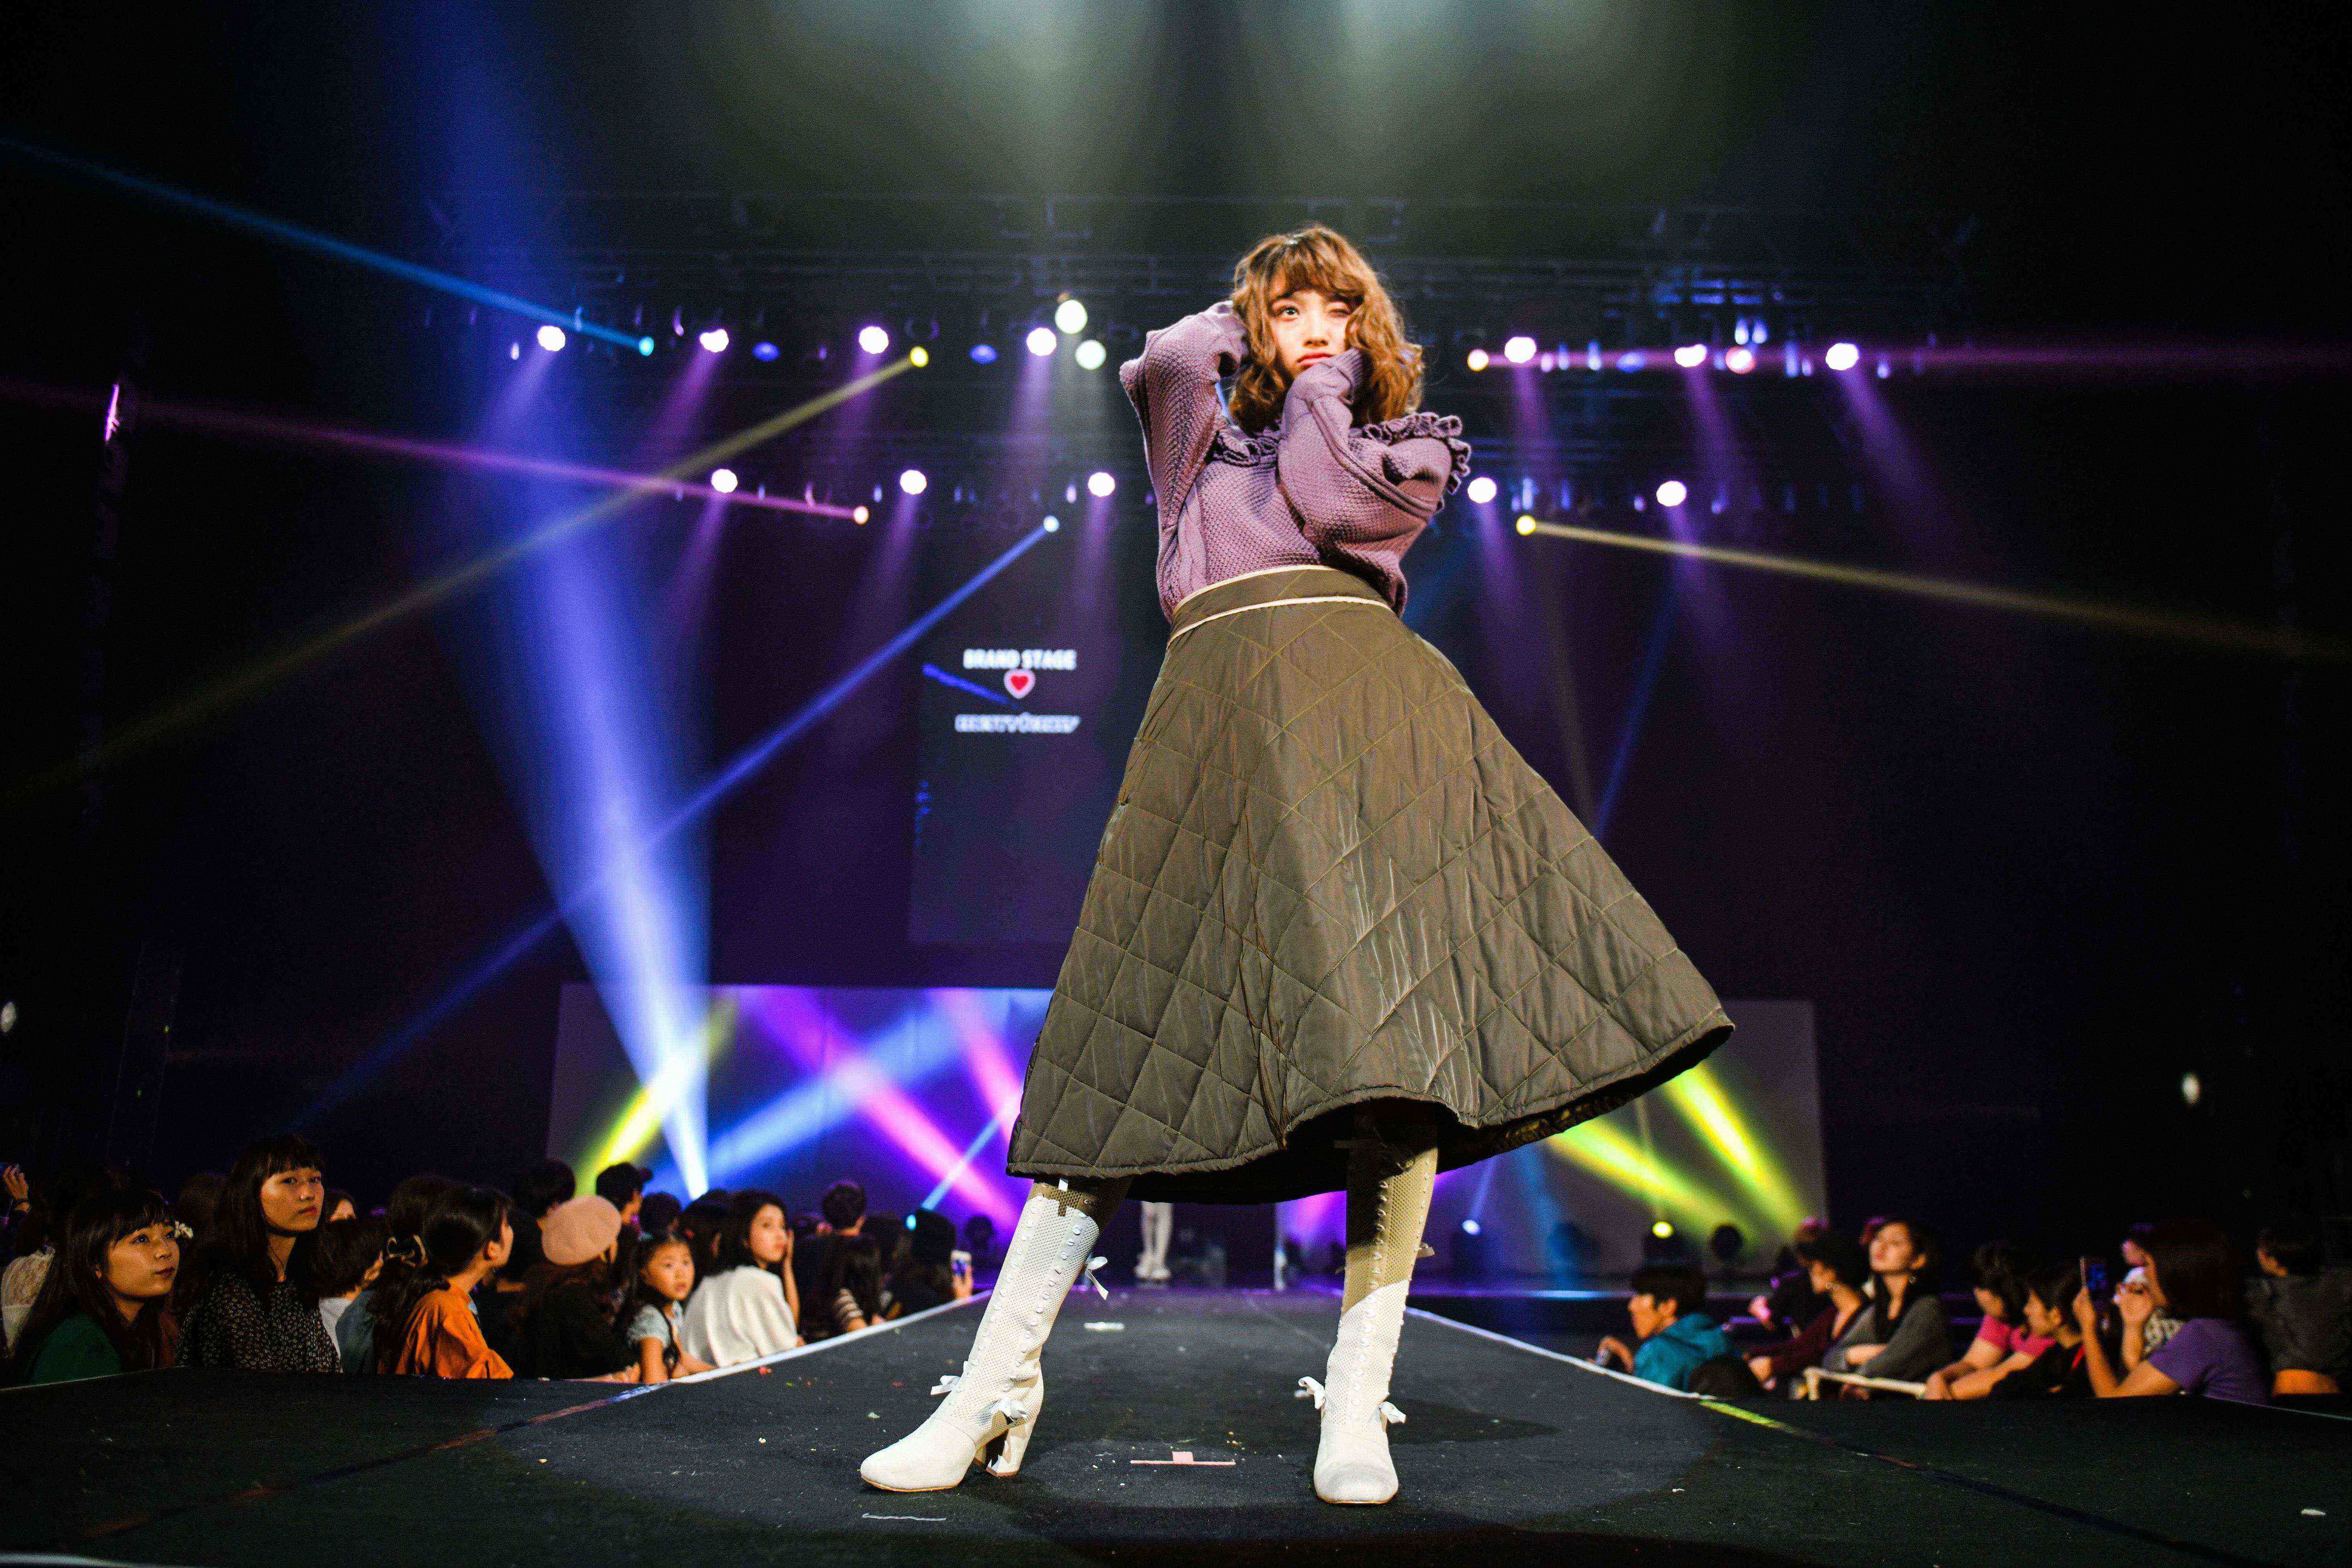 関西圏の学生達によるファッションイベント Beatnixs スペシャルファッションショー にandemiu ゲストライブには代に大人気のシンガーacaneの出演が決定 株式会社pifのプレスリリース